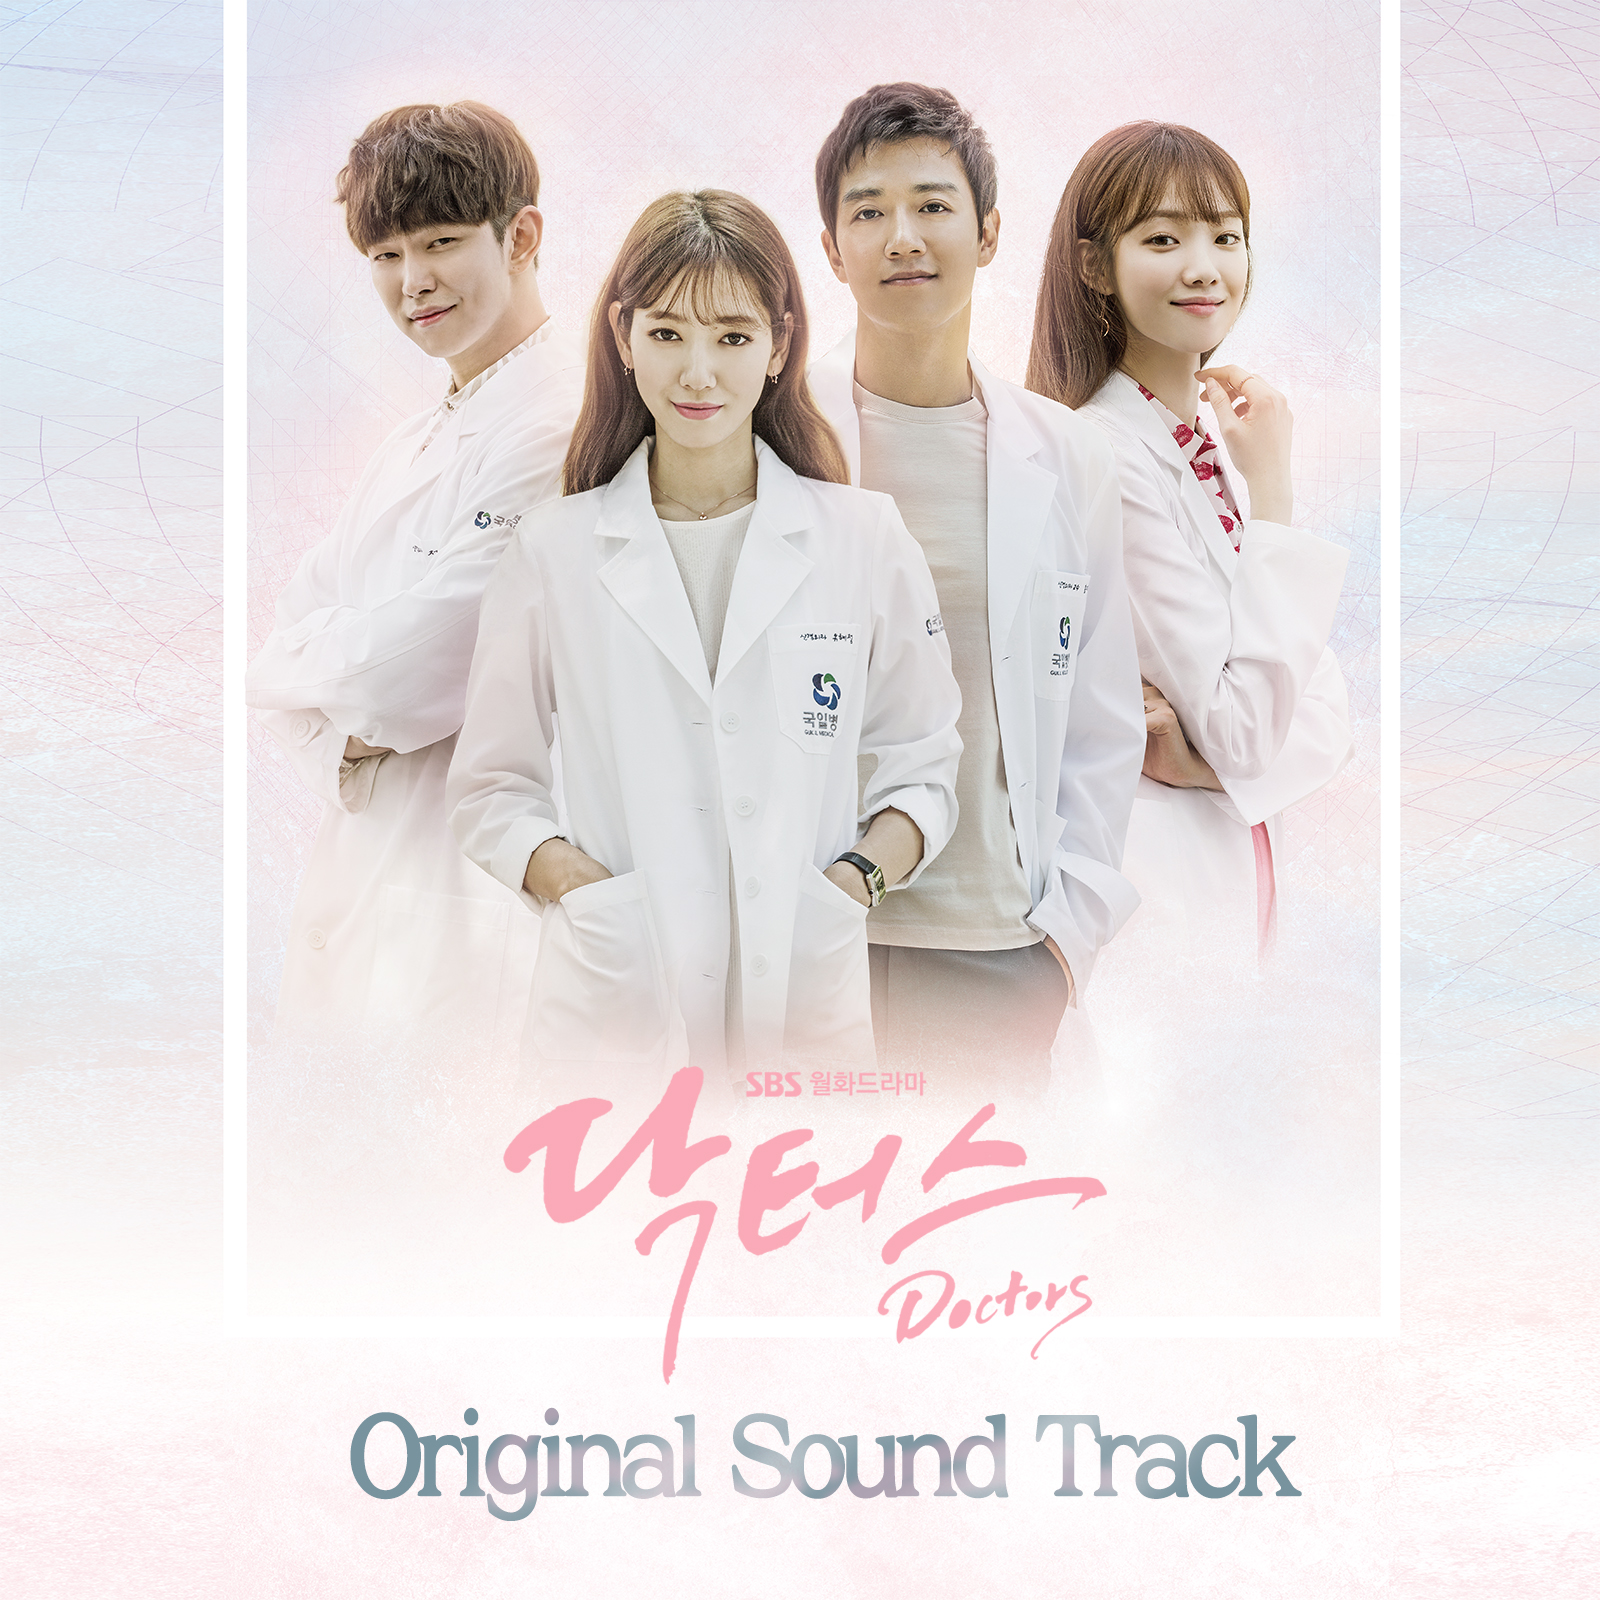 Download Ost Drama Korea Full Album Dalam